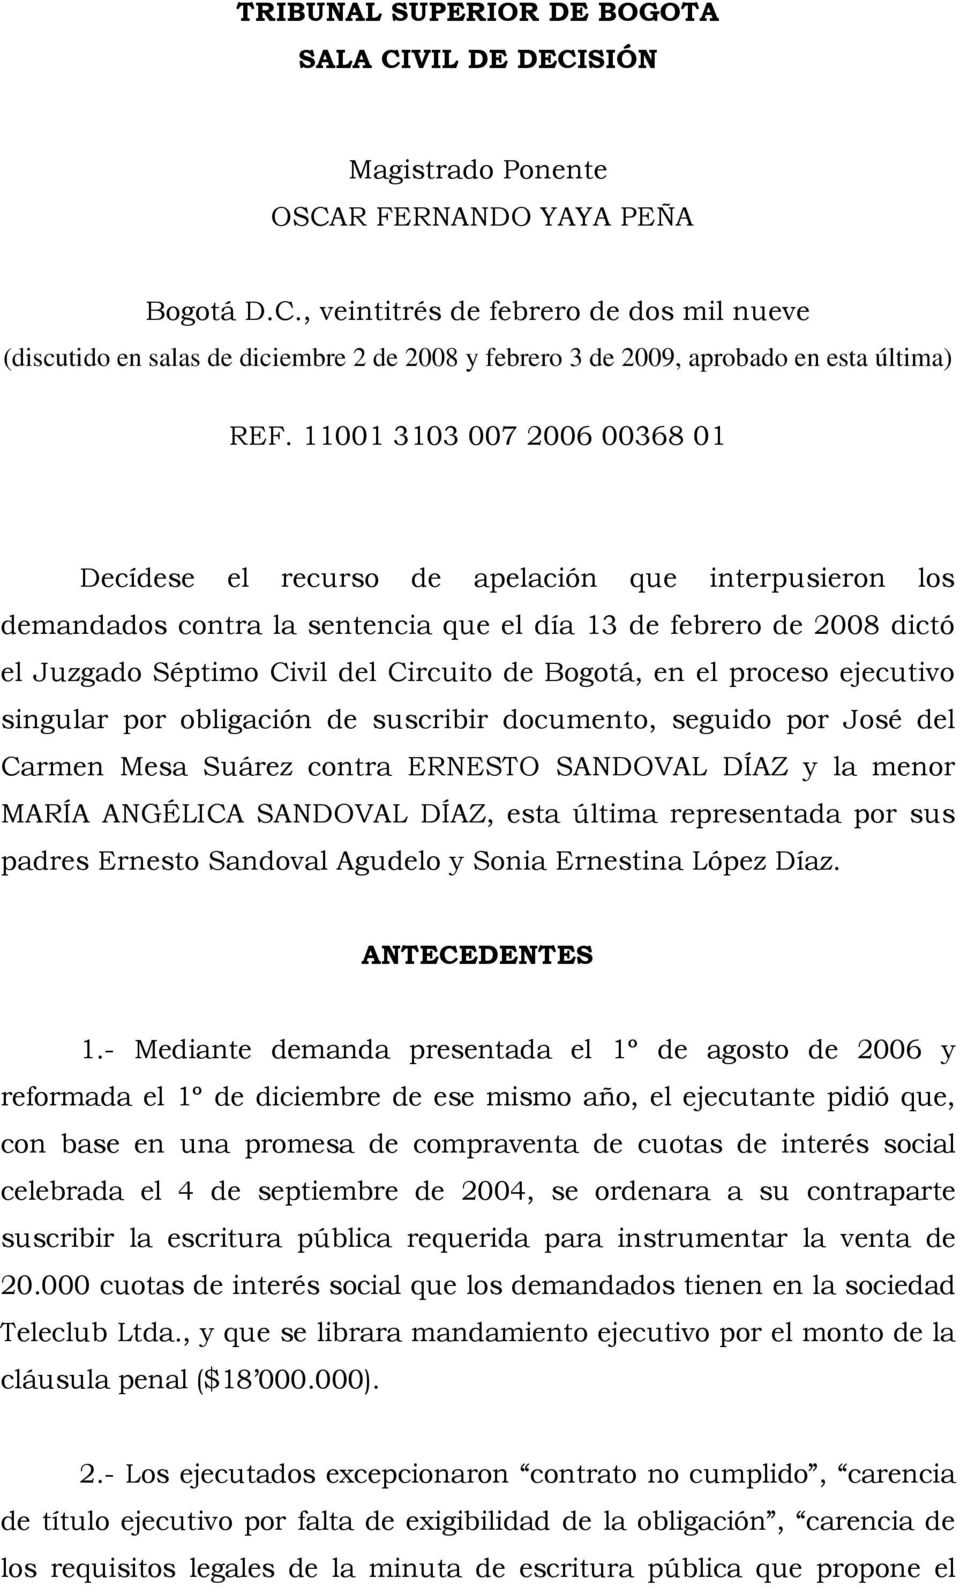 Bogotá, en el proceso ejecutivo singular por obligación de suscribir documento, seguido por José del Carmen Mesa Suárez contra ERNESTO SANDOVAL DÍAZ y la menor MARÍA ANGÉLICA SANDOVAL DÍAZ, esta